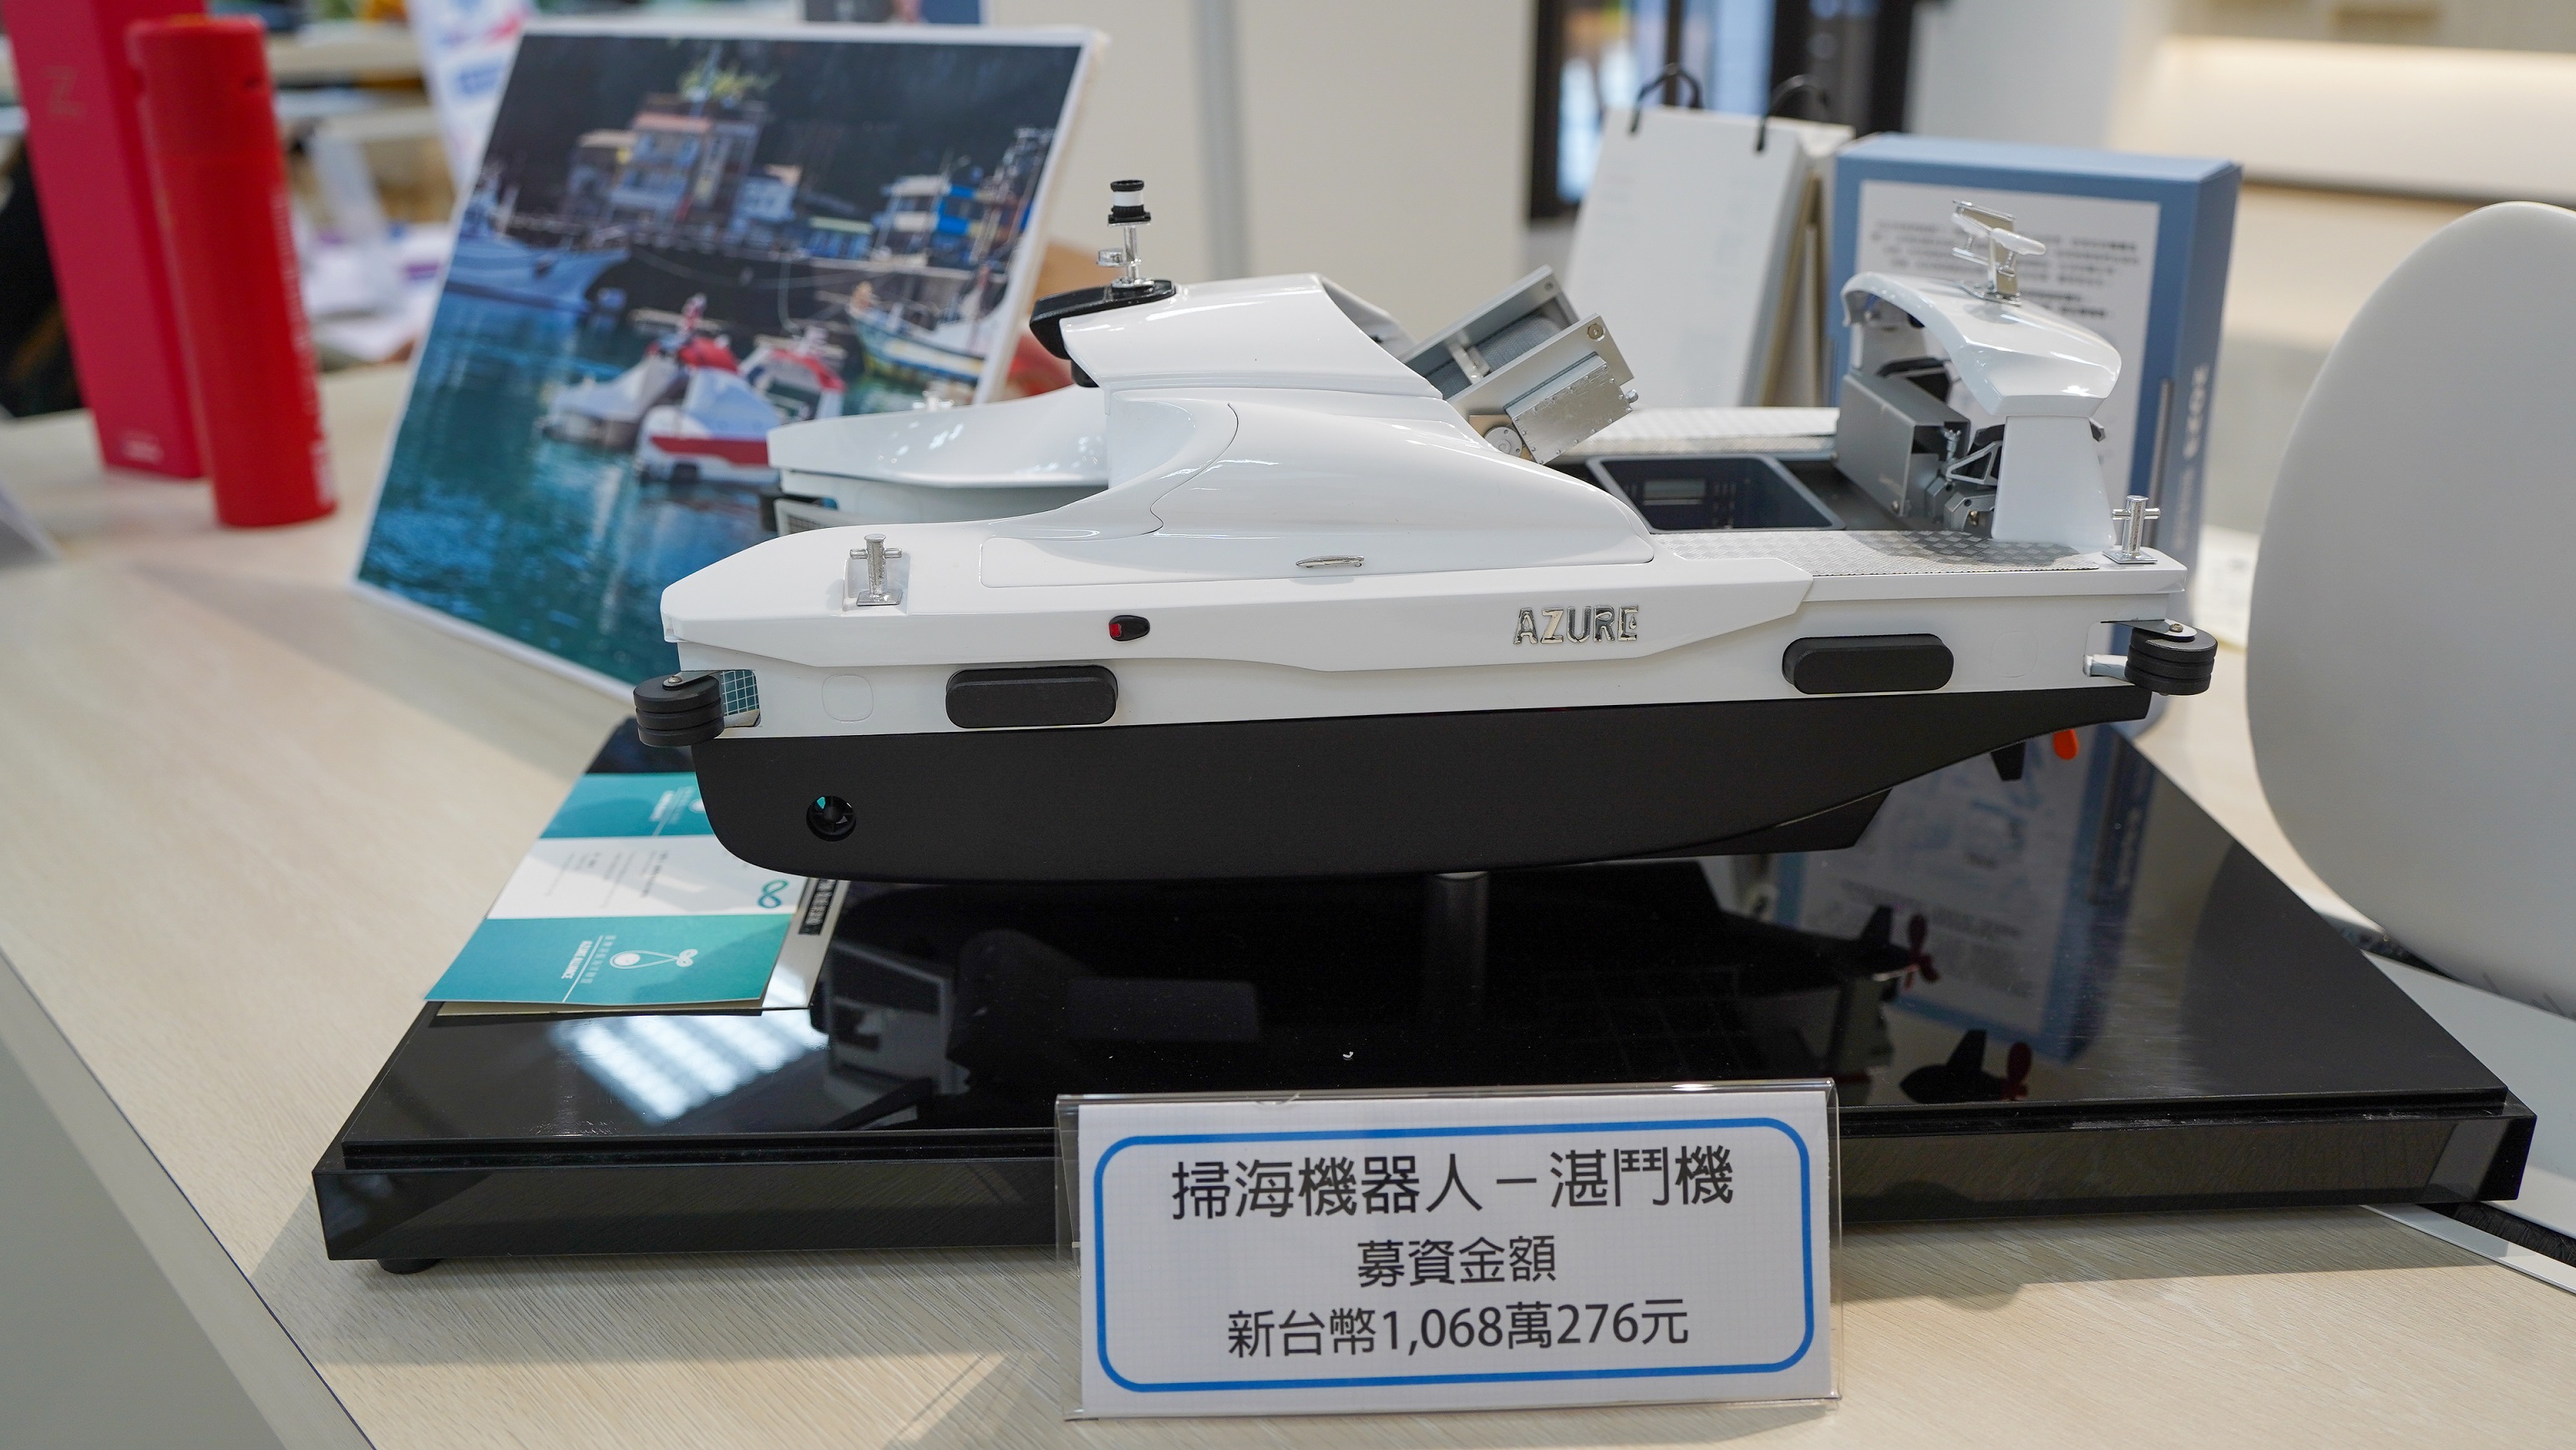 「Azure 掃海機器人湛鬥機」於109年募得超過1000萬元，相較於燃油清潔船，每小時可減少340kg二氧化碳排放，在移除海洋垃圾守護生態的同時，也透過低碳綠能科技應用，為環境盡一份心力。